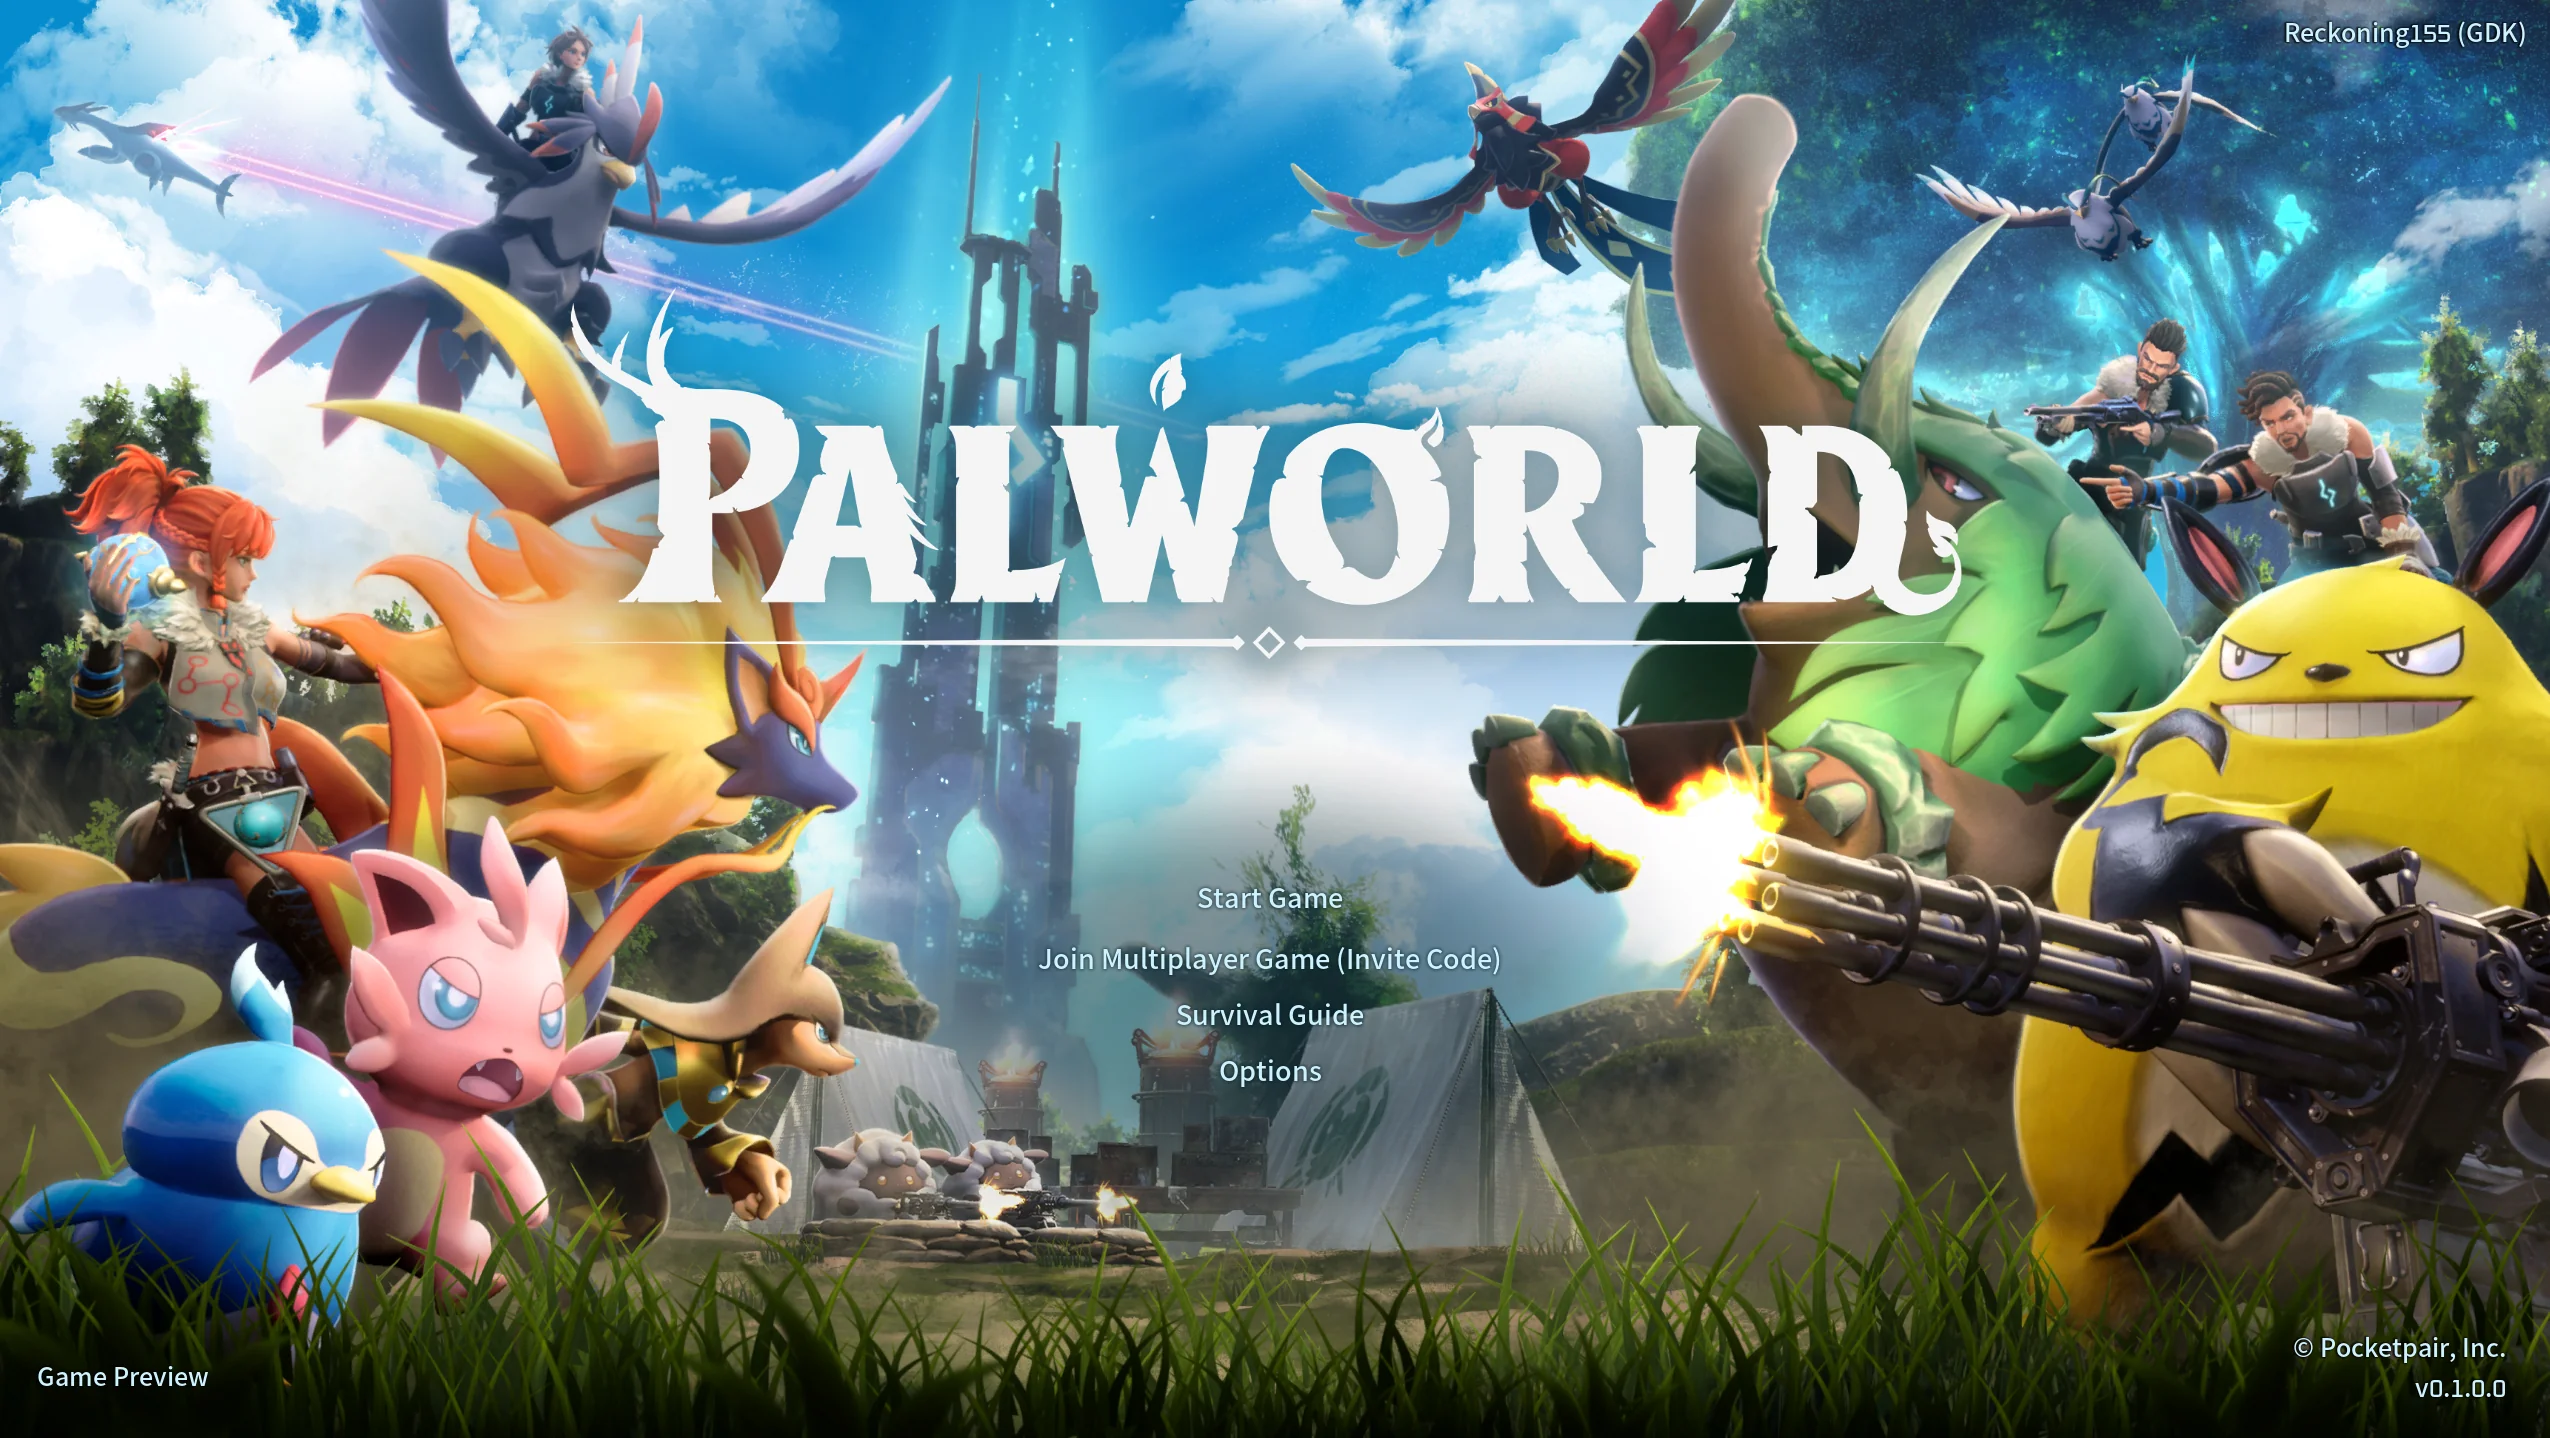 Піковий онлайн рольового шутера Palworld в Steam сягнув 561 тисячі користувачів